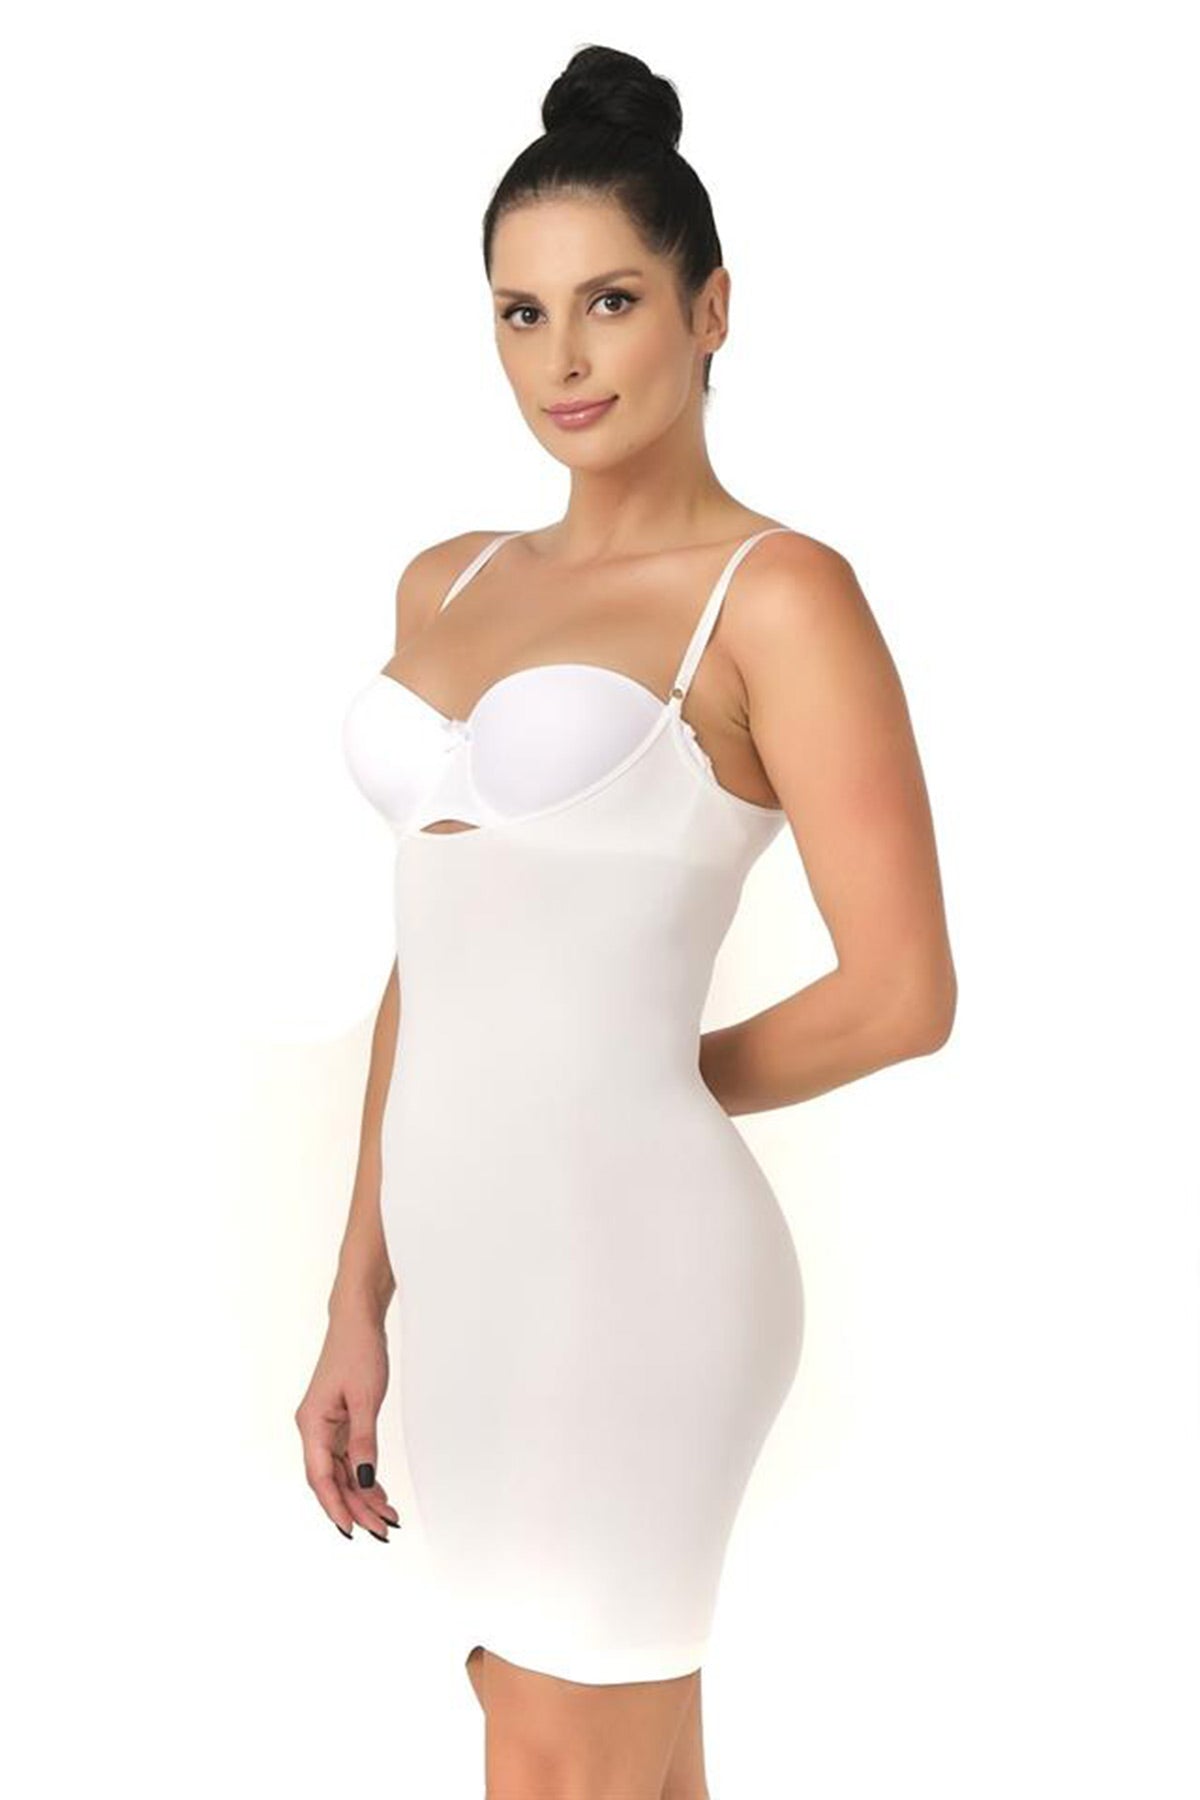 Seamless Postpartum Corset Dress White - 5060